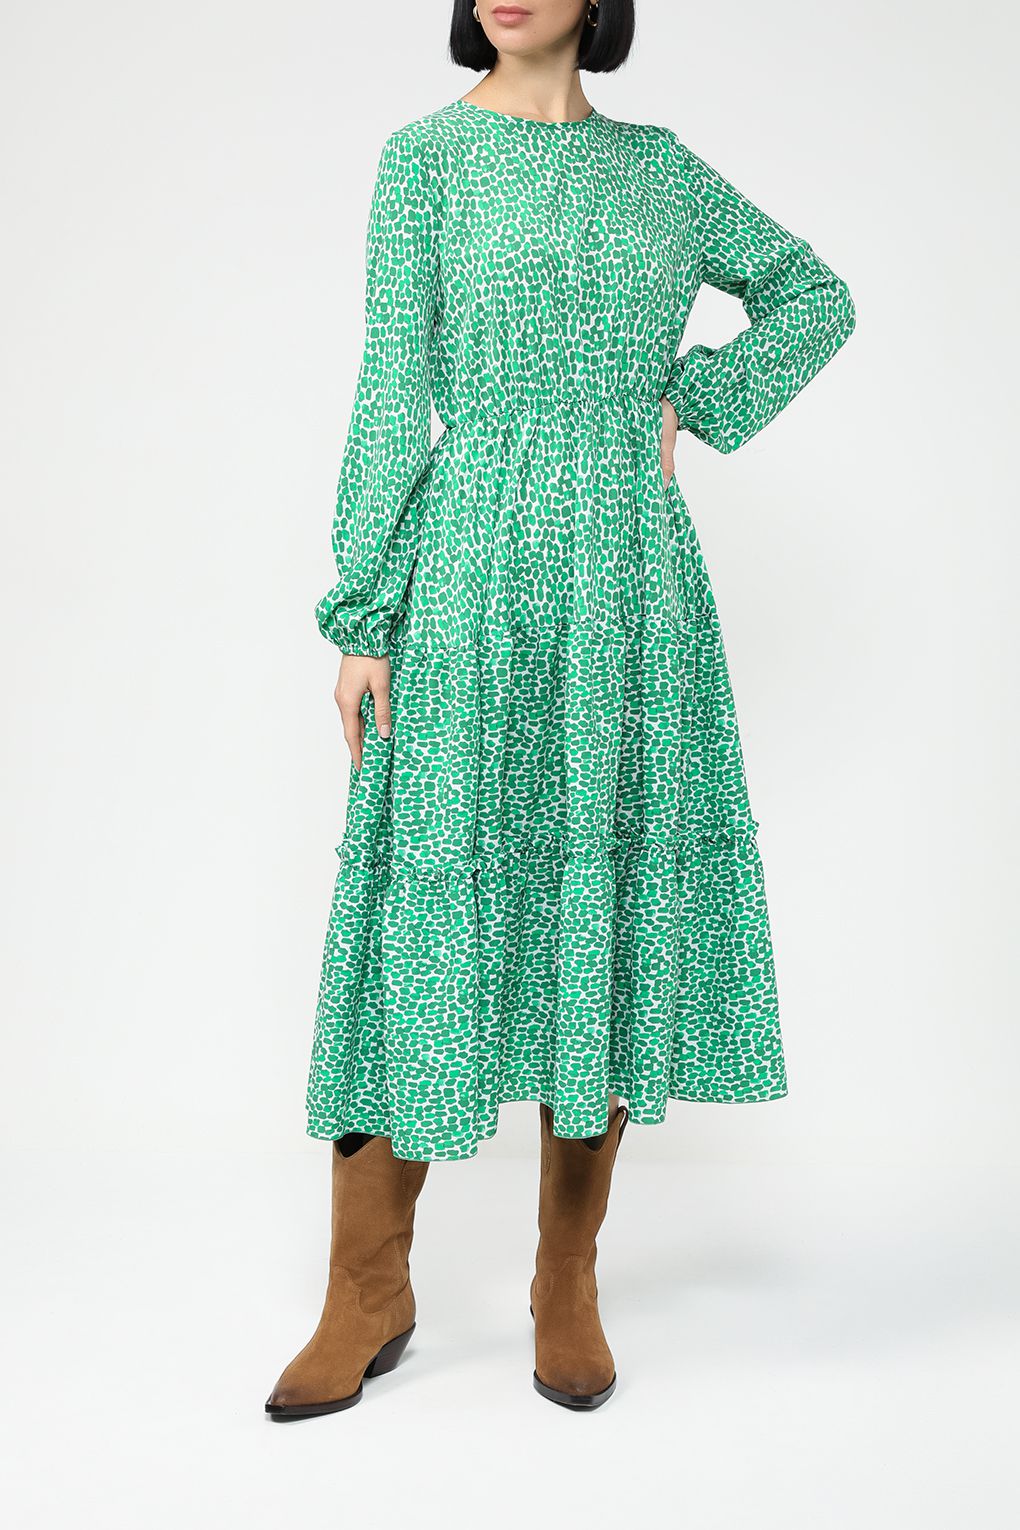 Платье женское BELUCCI BL23075366-004 зеленый зеленое XL